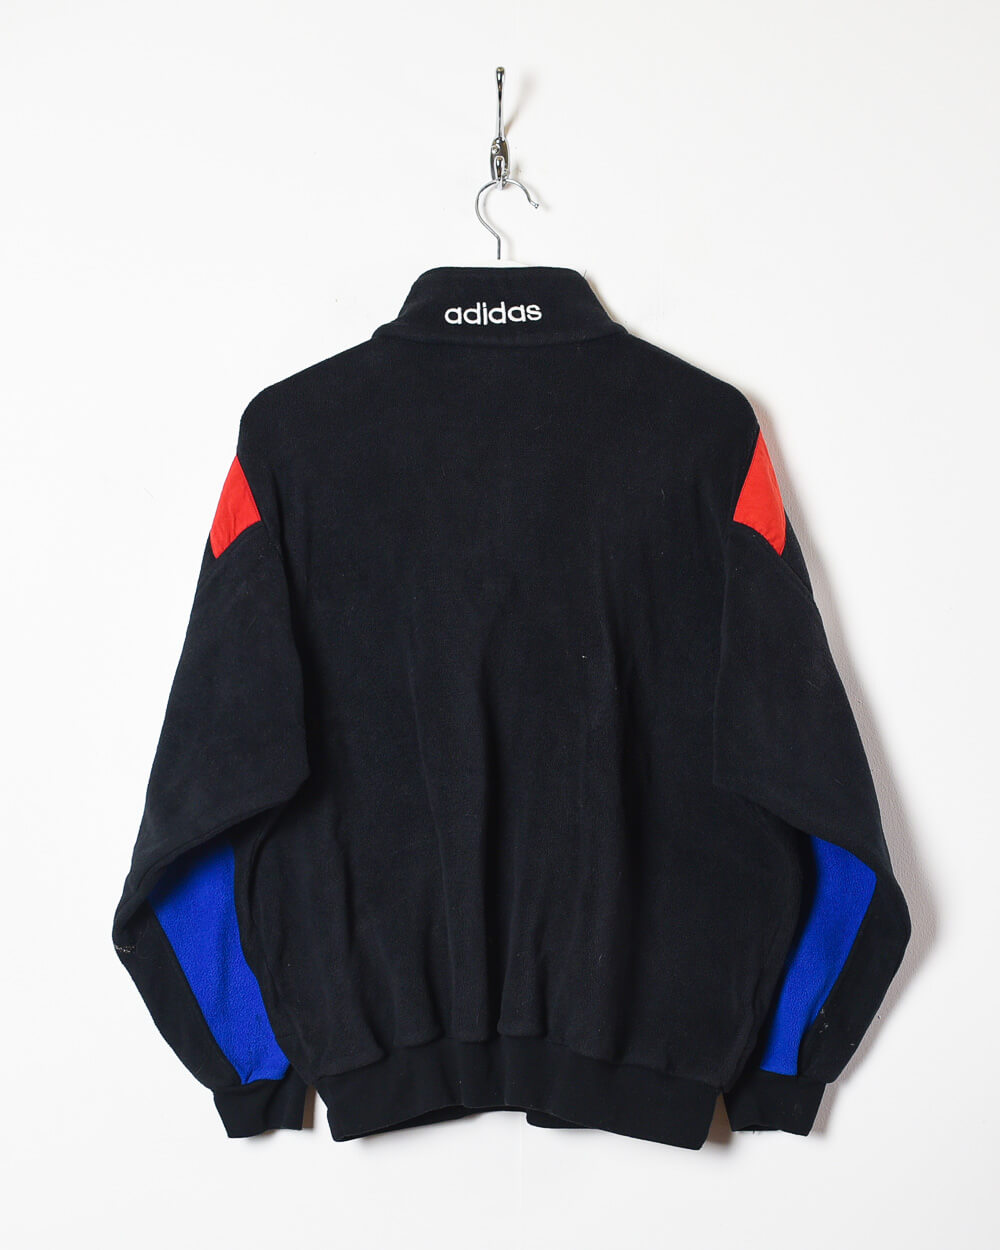 Black Adidas 90s Rangers 1/4 Zip Fleece - Small